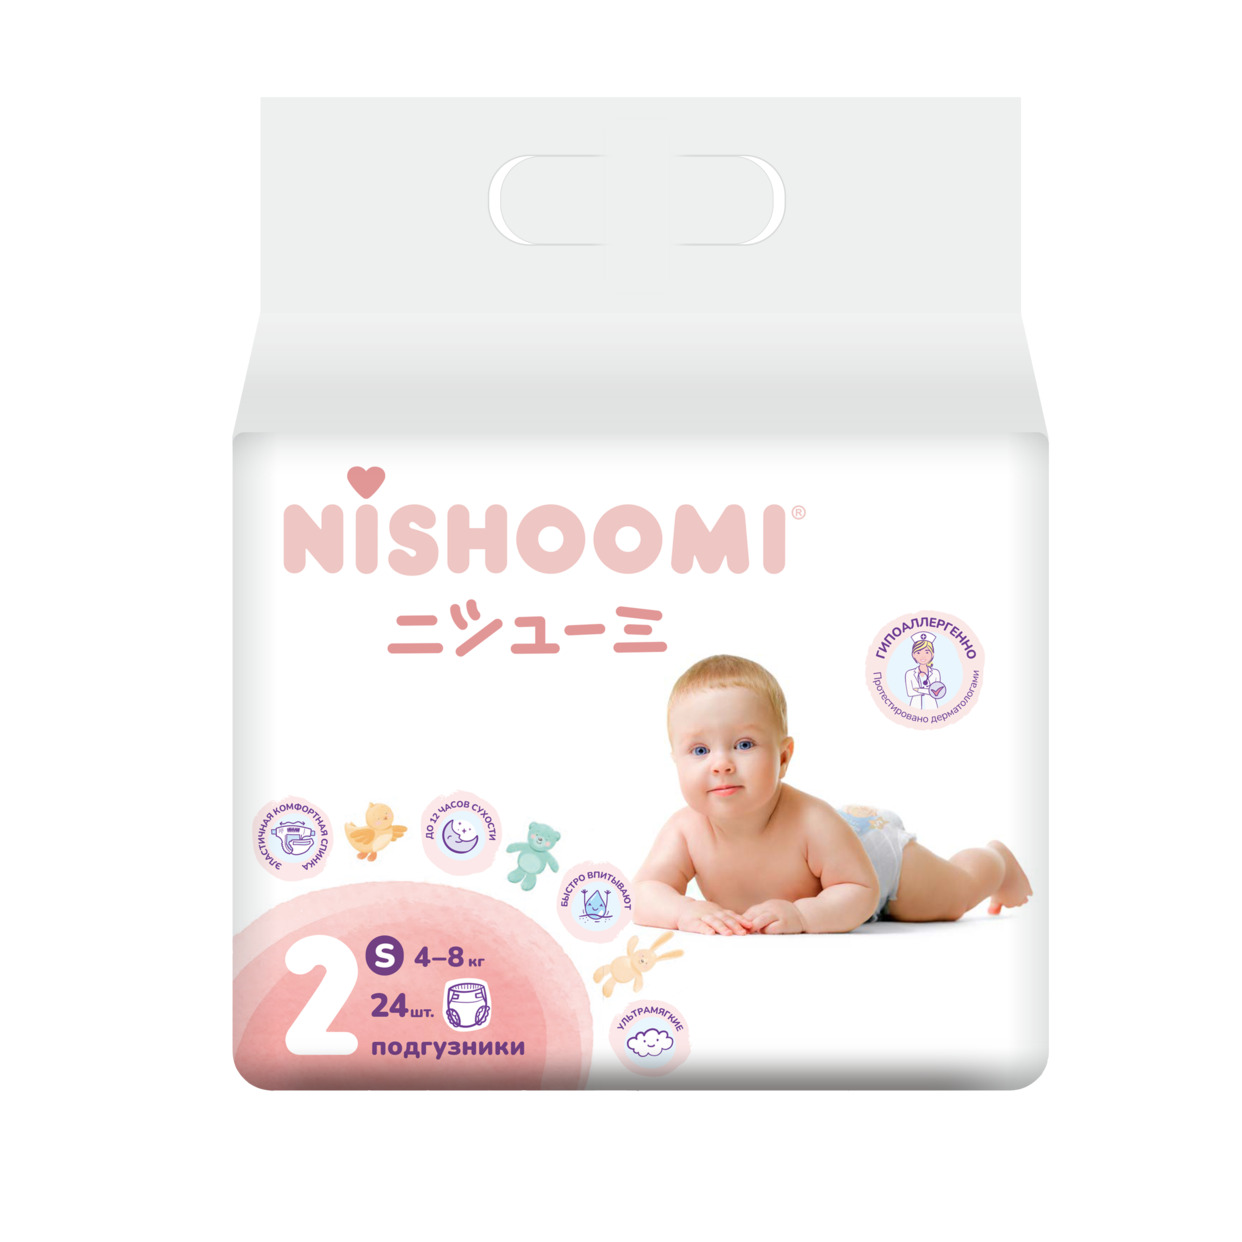 Изделия санитарно-гигиеническиедля ухода за детьми Nishoomi подгузники детские одноразовые. Размер Мини (S (2)), для детей весом 4-8 кг, 24 штуки по акции в Пятерочке